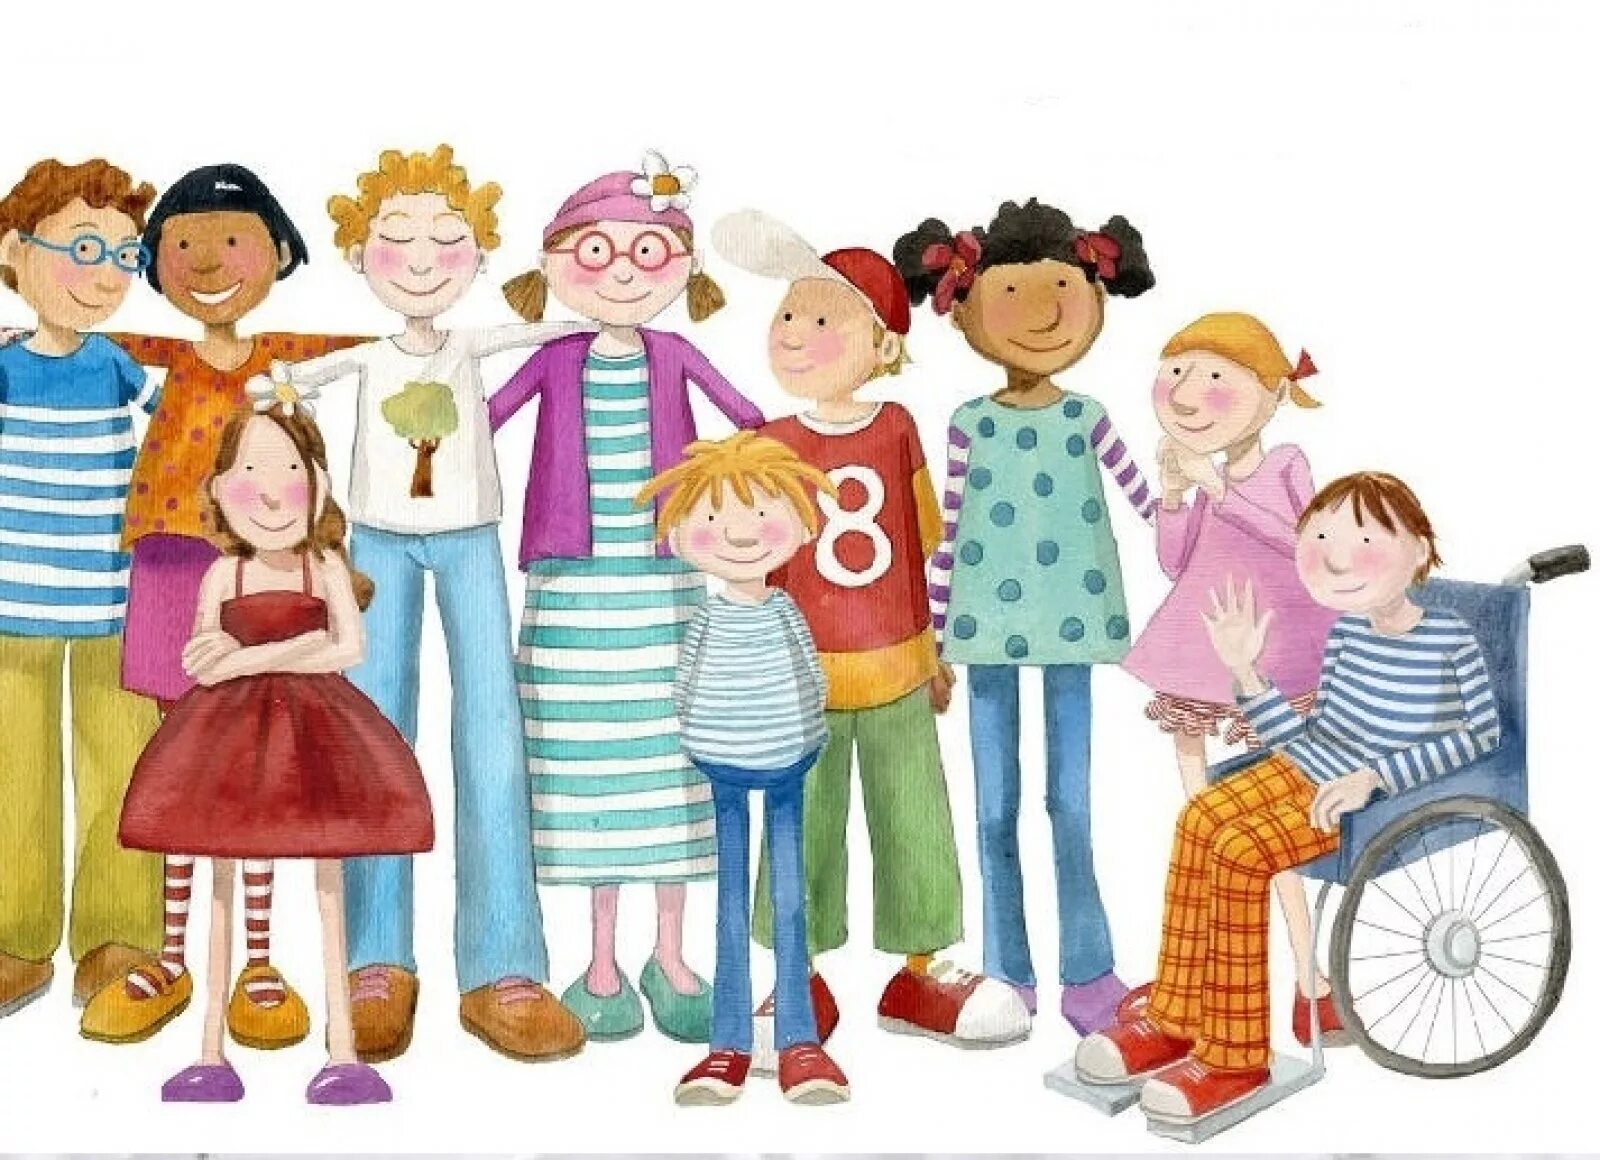 Society child. Толерантность в семье. Семья иллюстрация. Разные дети. Дети разных возрастов иллюстрация.